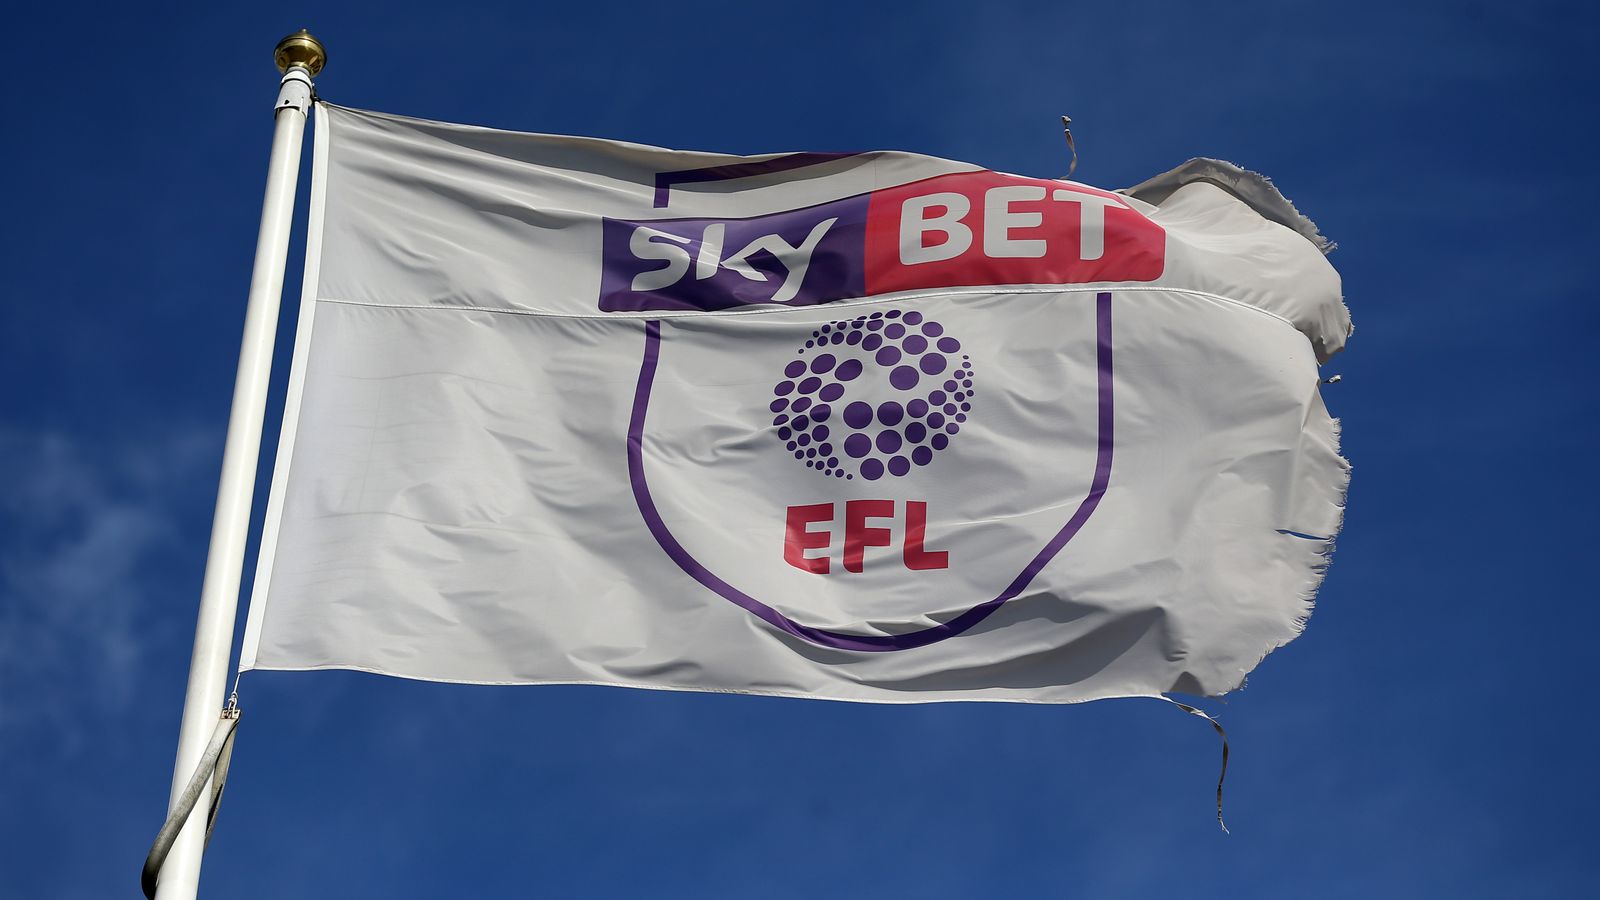 2021/22 Sky Bet Championship fixtures